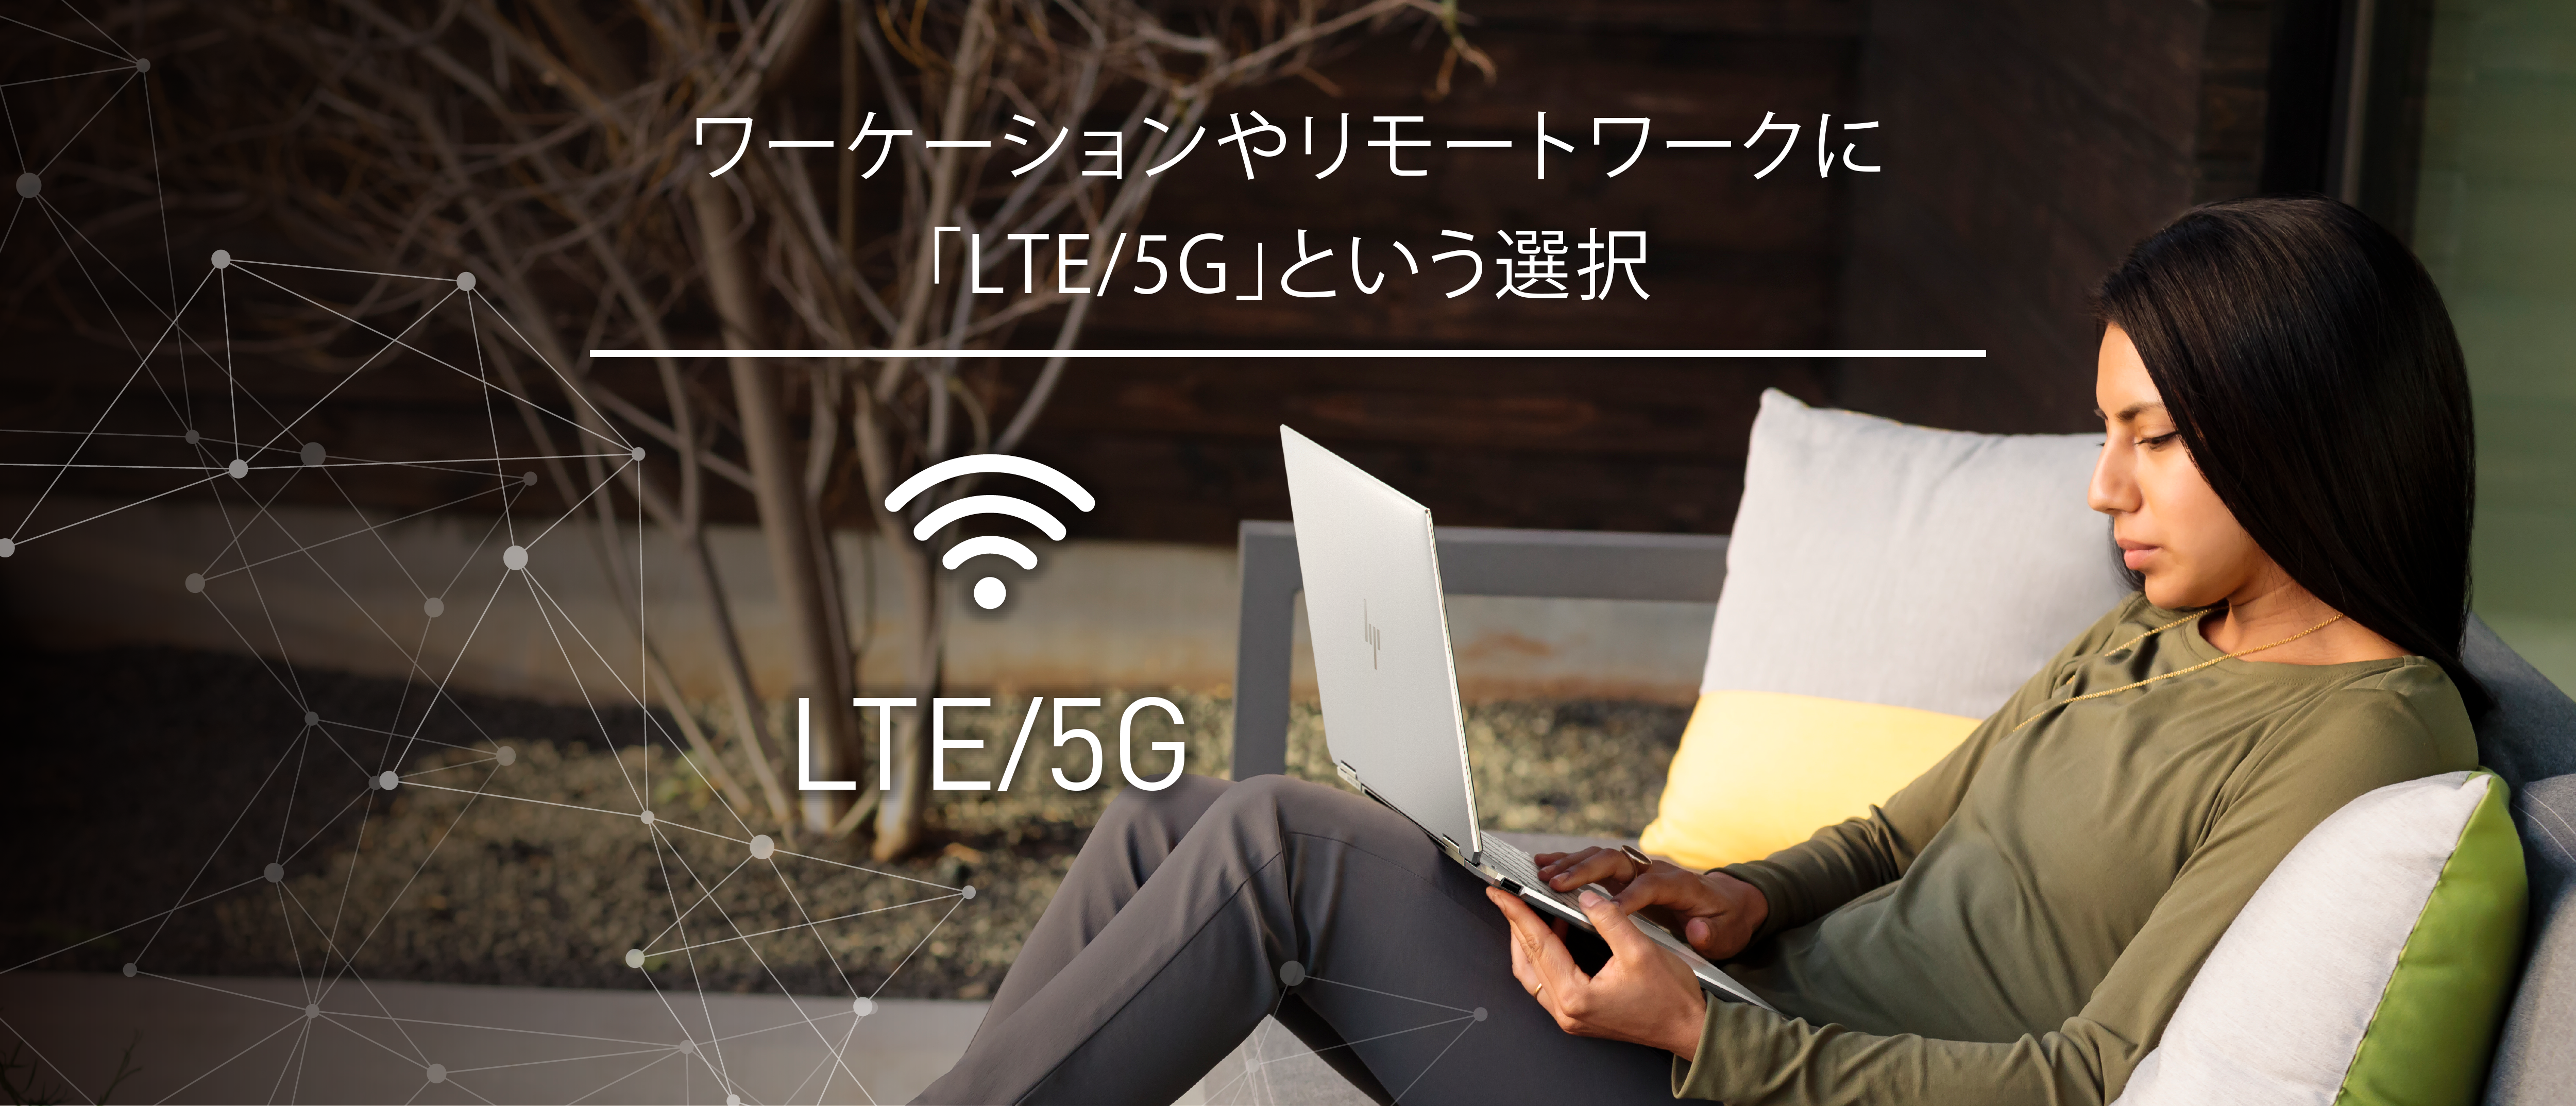 ワーケーションやリモートワークに「LTE/5G」という選択